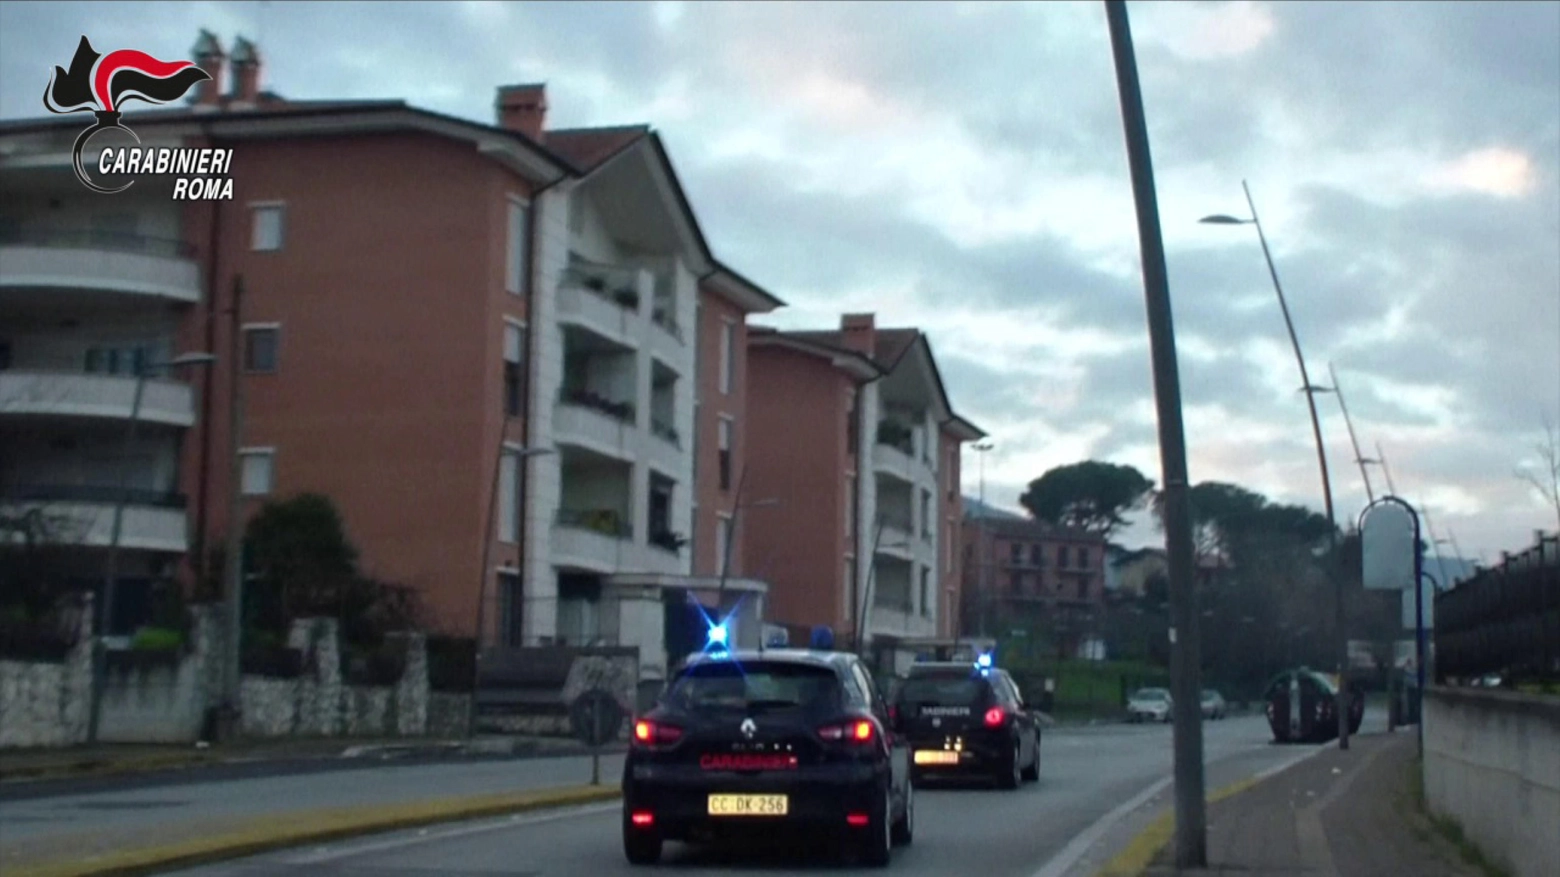 L'intervento dei carabinieri nella zona dell'aggressione molesta